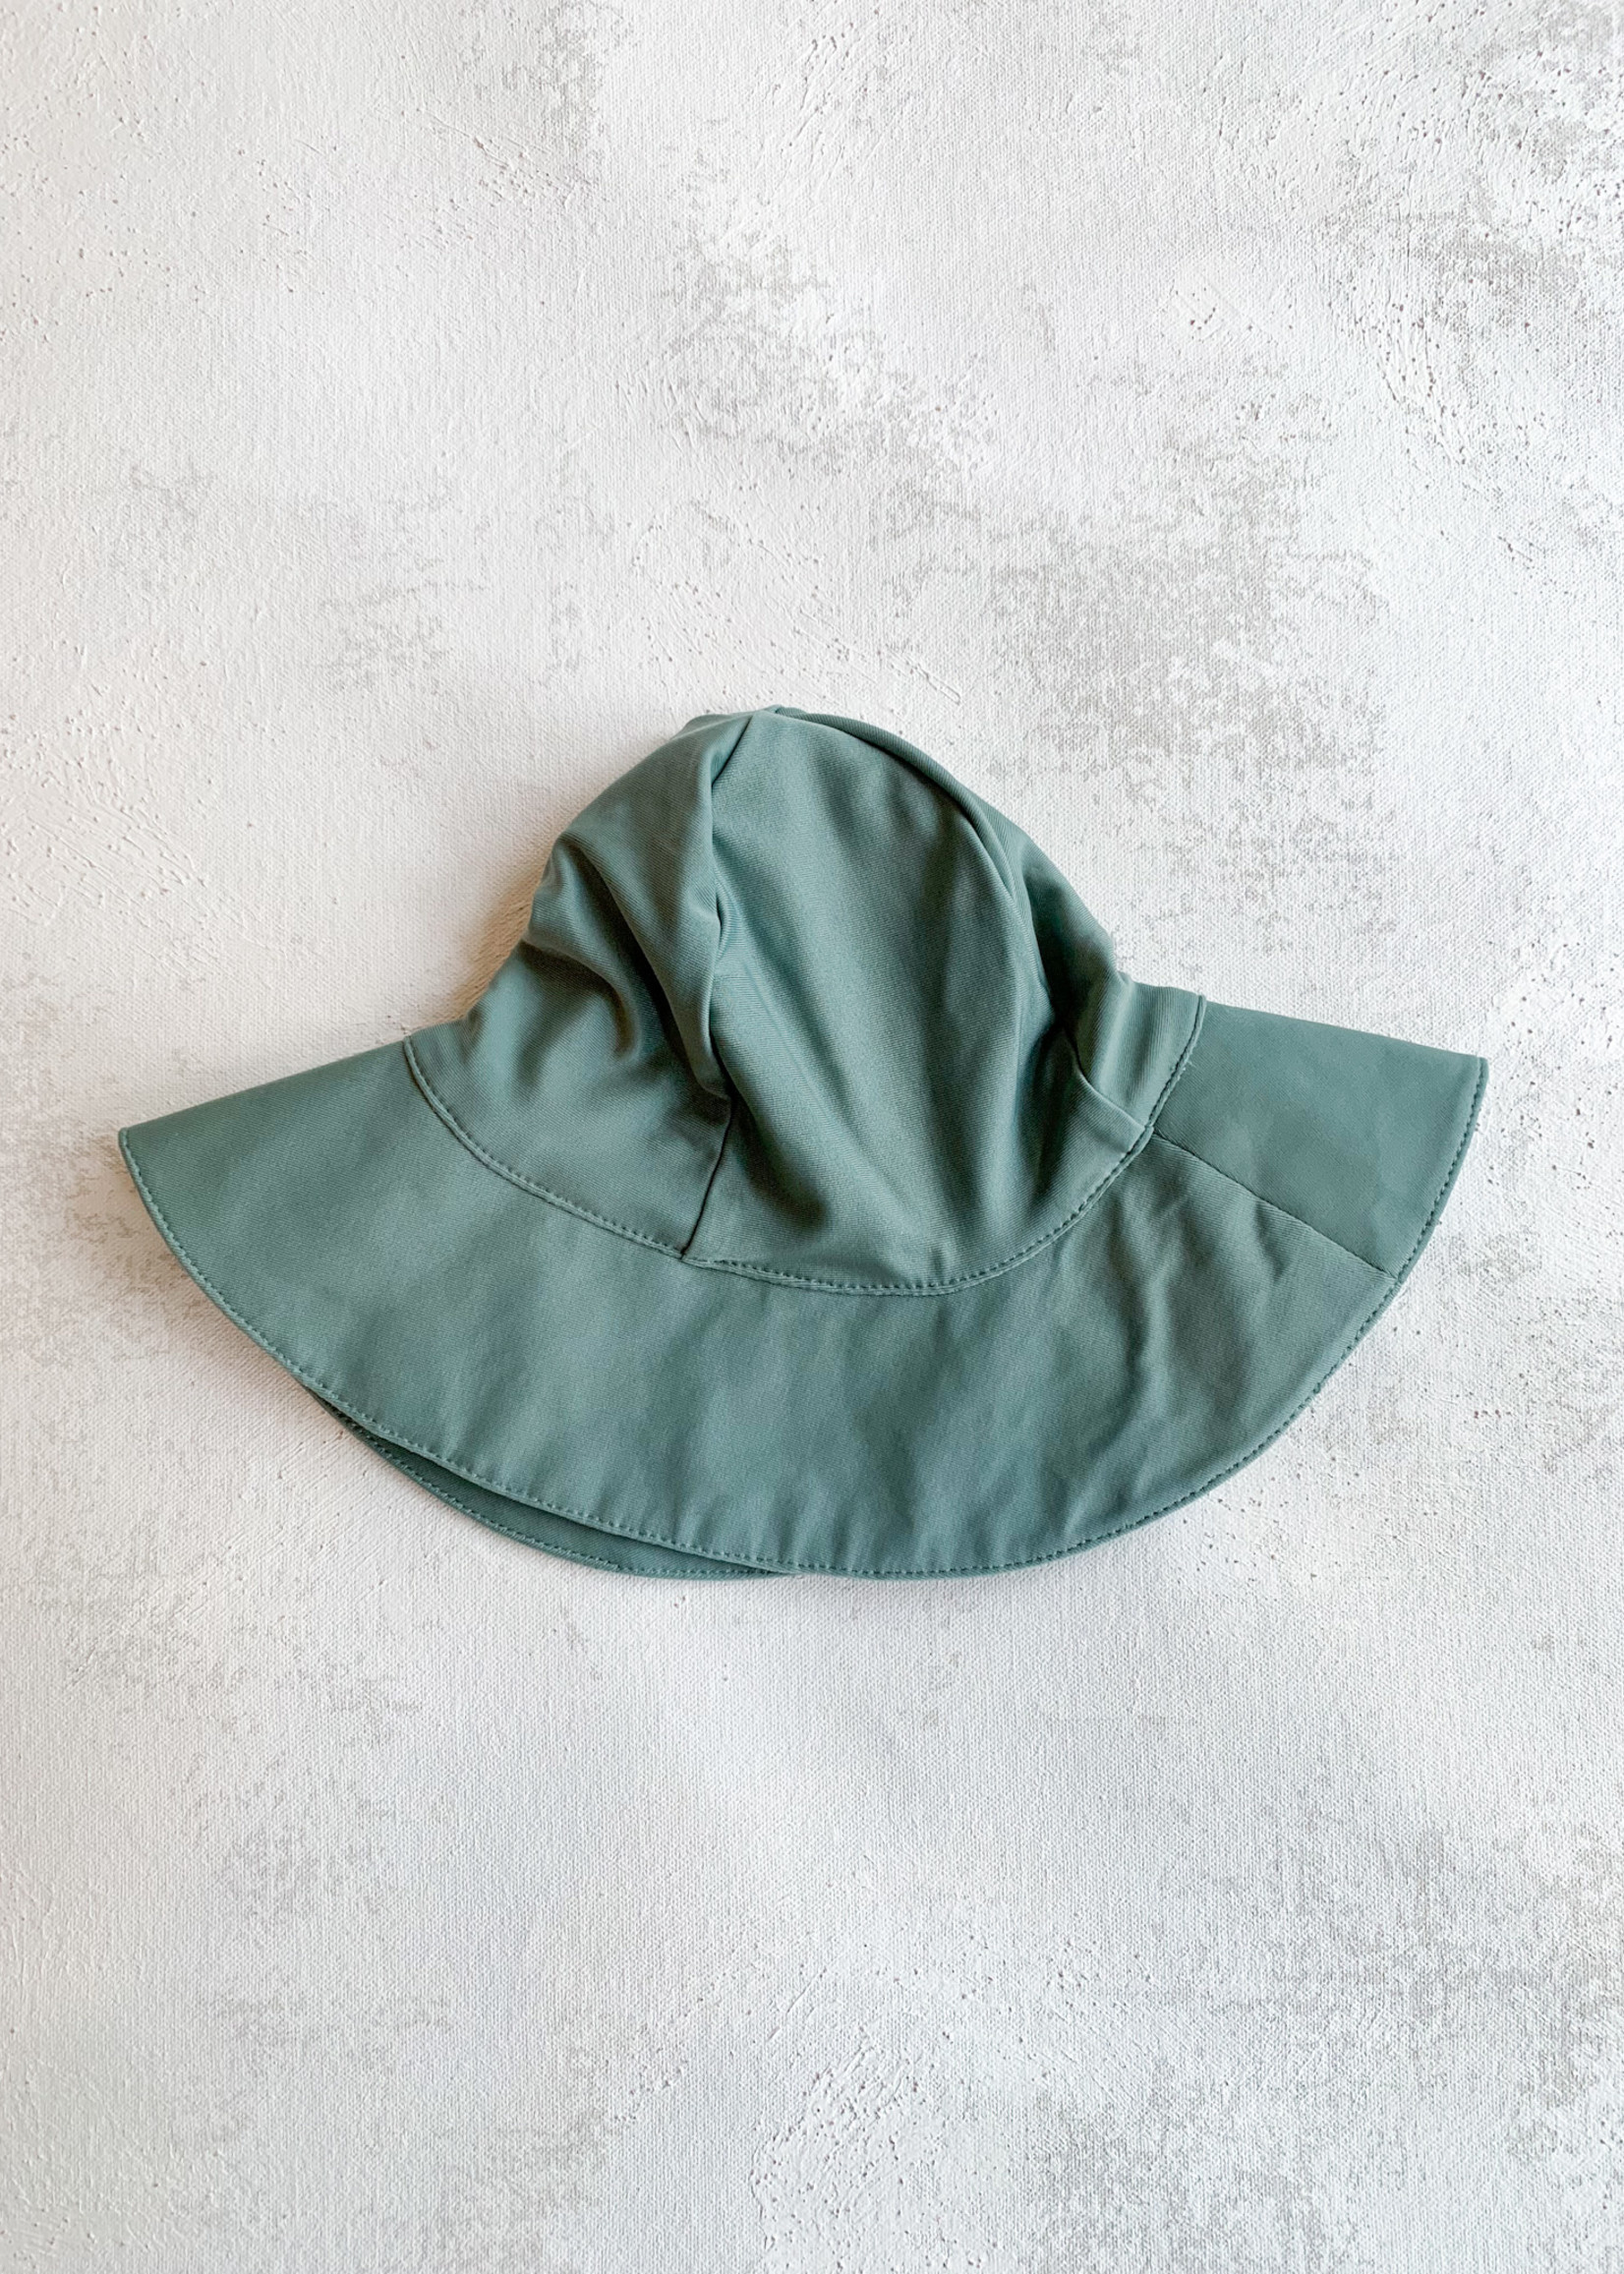 Elitaire Petite Baby Bucket Hat in Teal Green